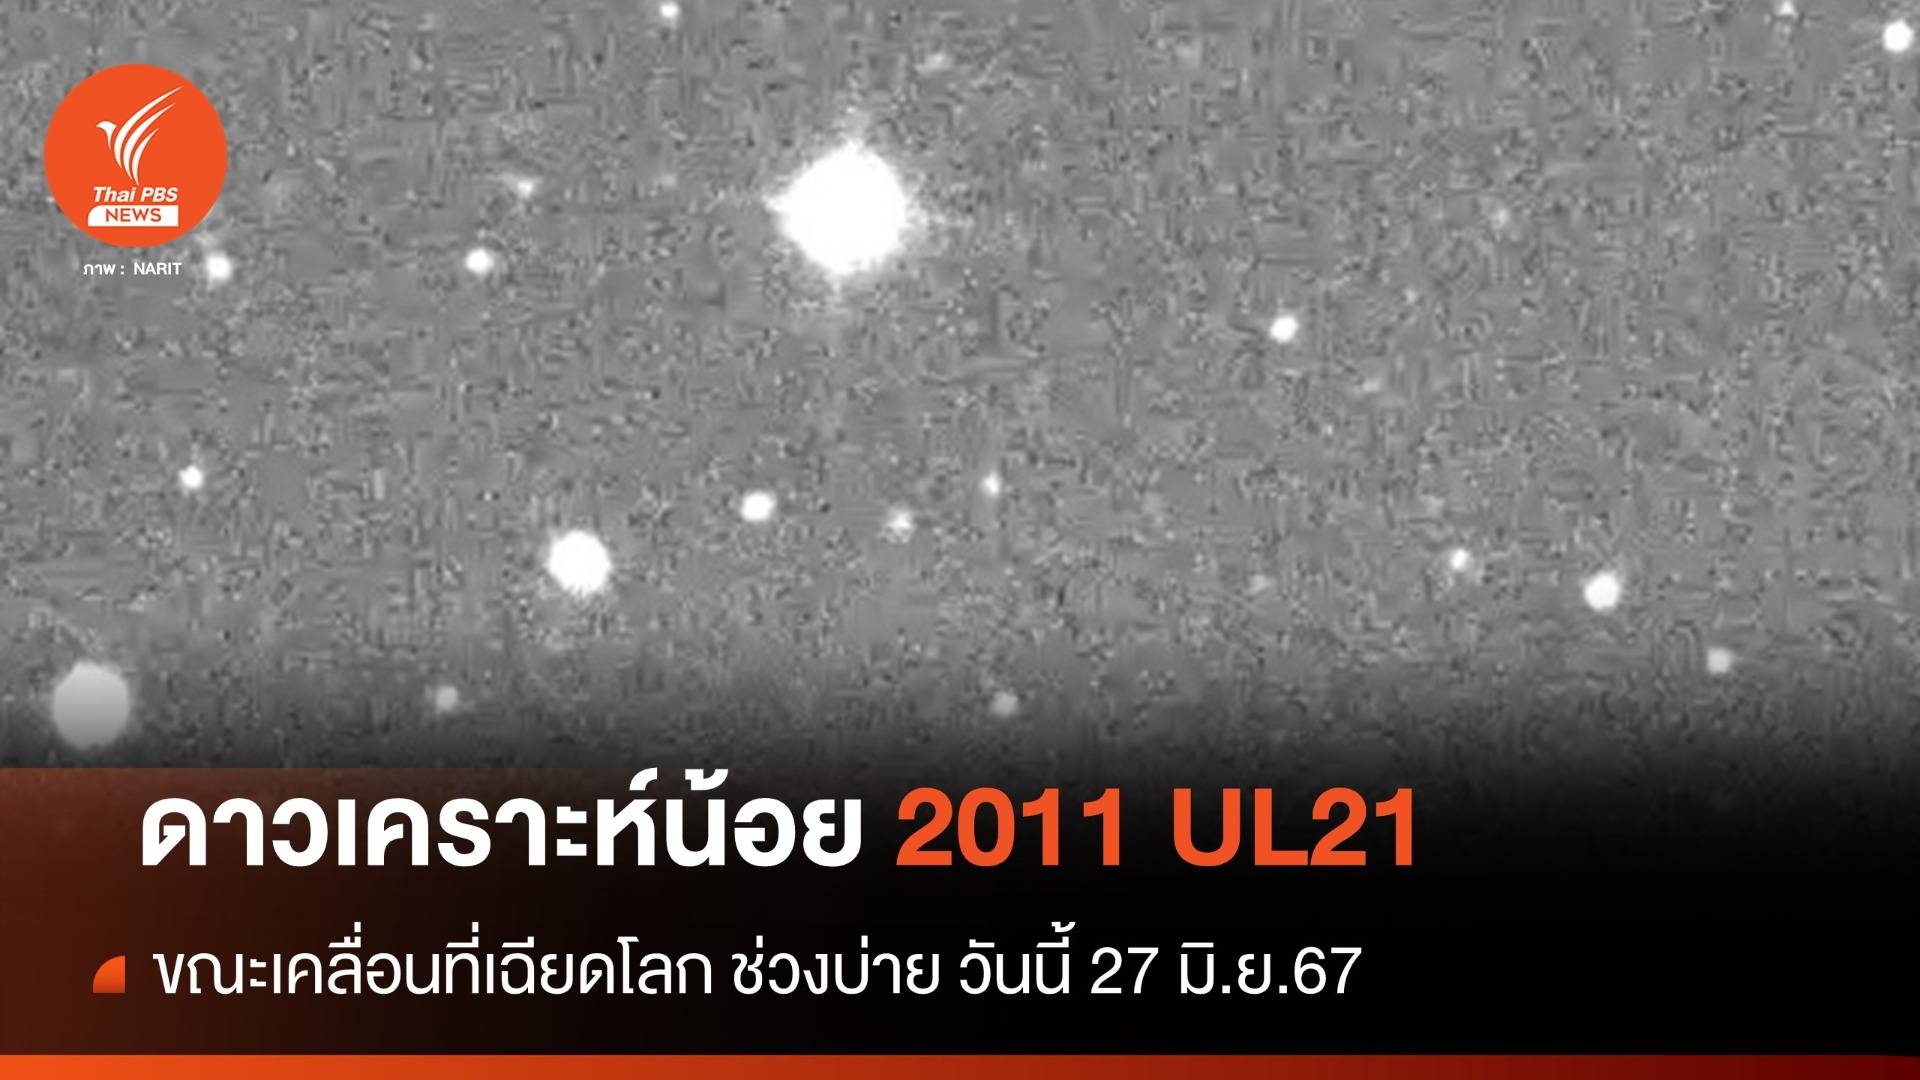 เปิดภาพ "ดาวเคราะห์น้อย 2011 UL21" ขณะเคลื่อนที่เฉียดโลก